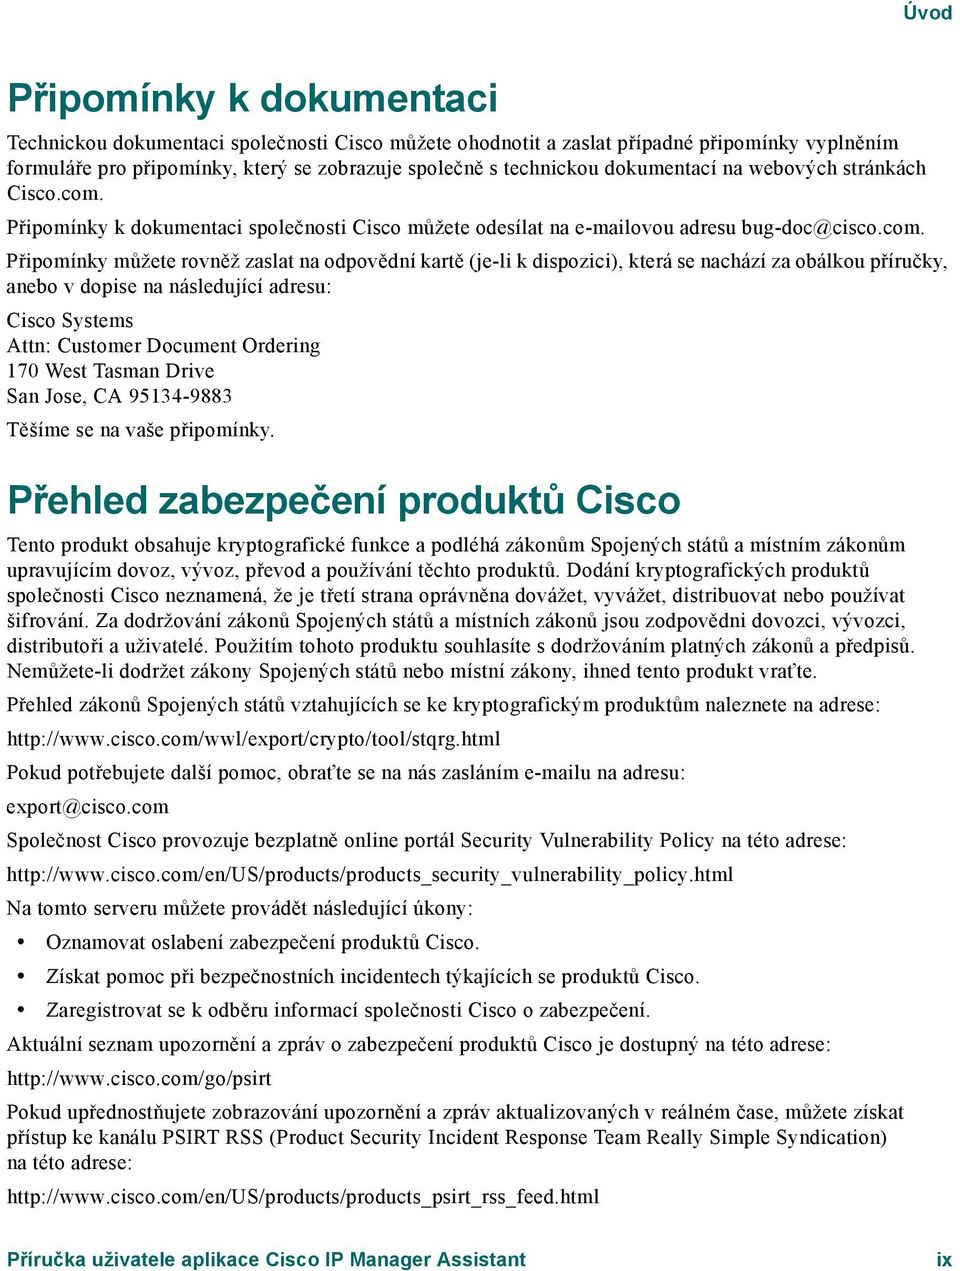 Připomínky k dokumentaci společnosti Cisco můžete odesílat na e-mailovou adresu bug-doc@cisco.com.